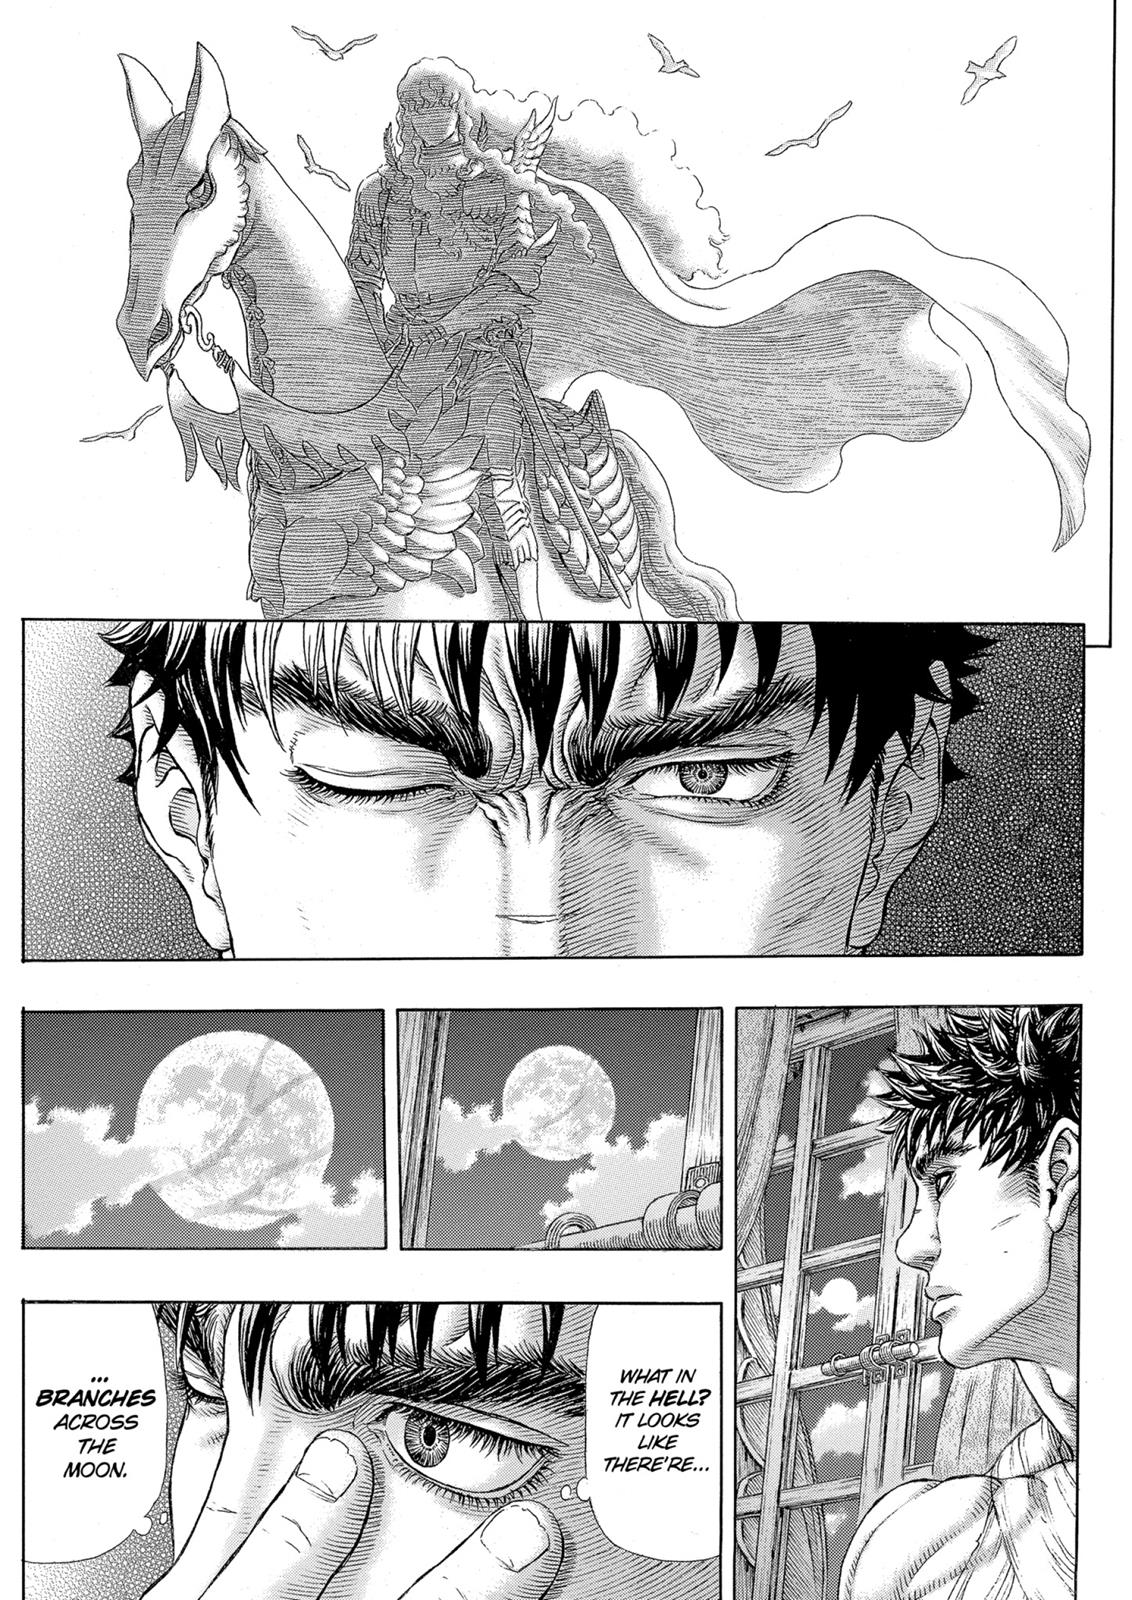 Berserk Manga Chapter 328 image 19